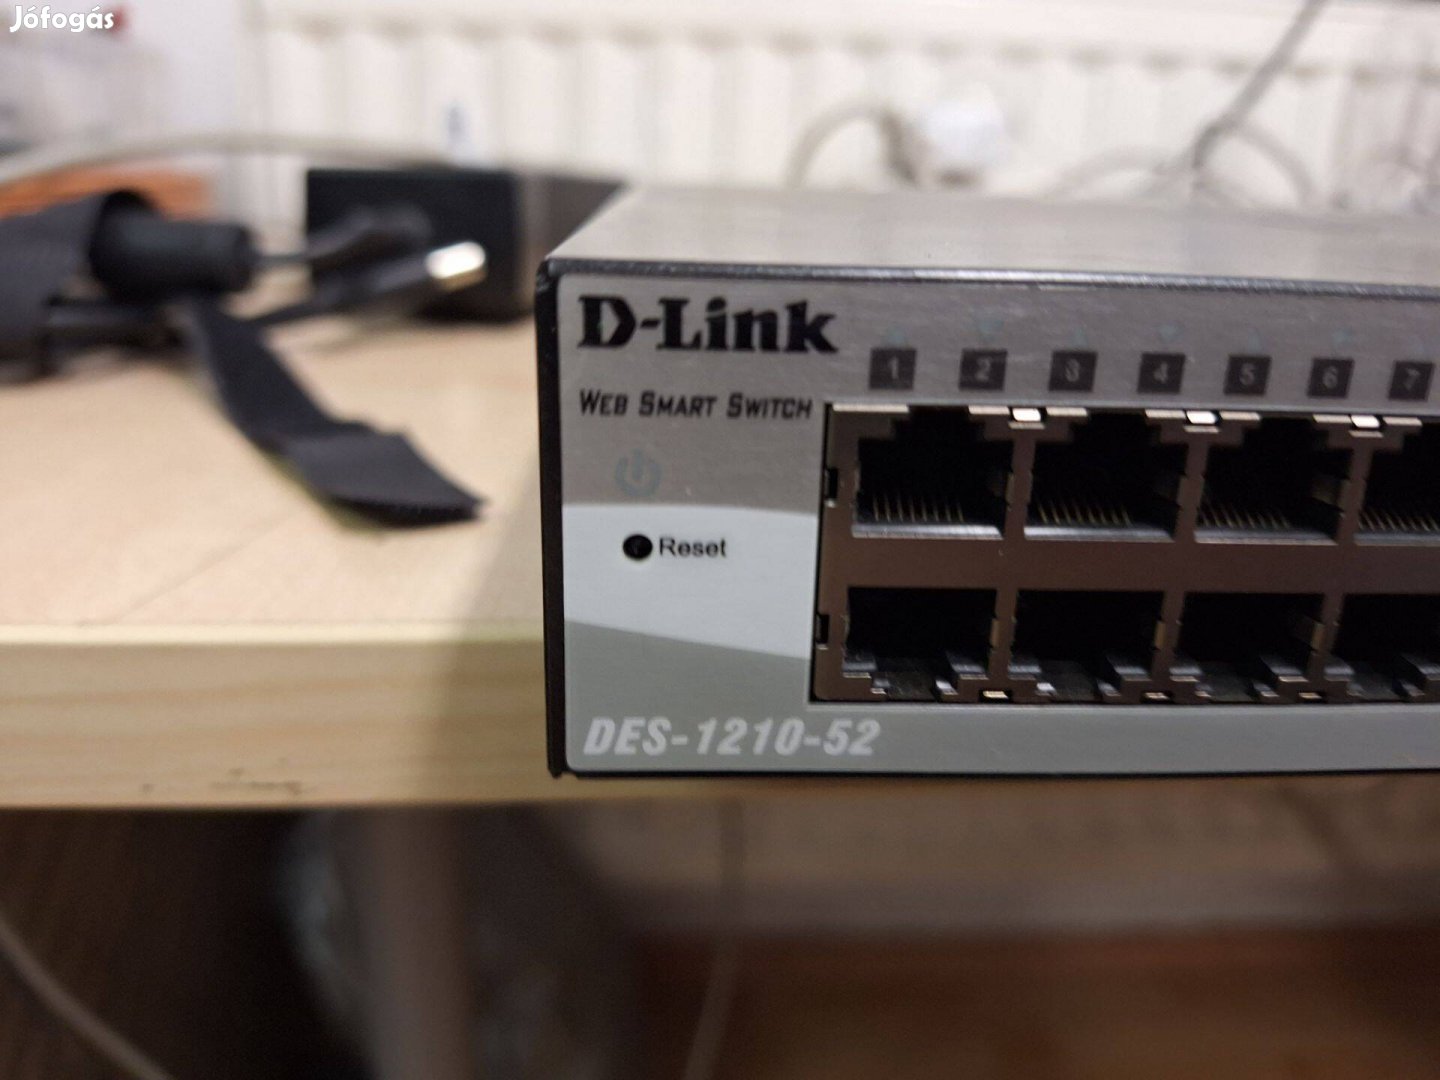 Eladó D-link Des-1210-52 menedzselhető switch 52 portos